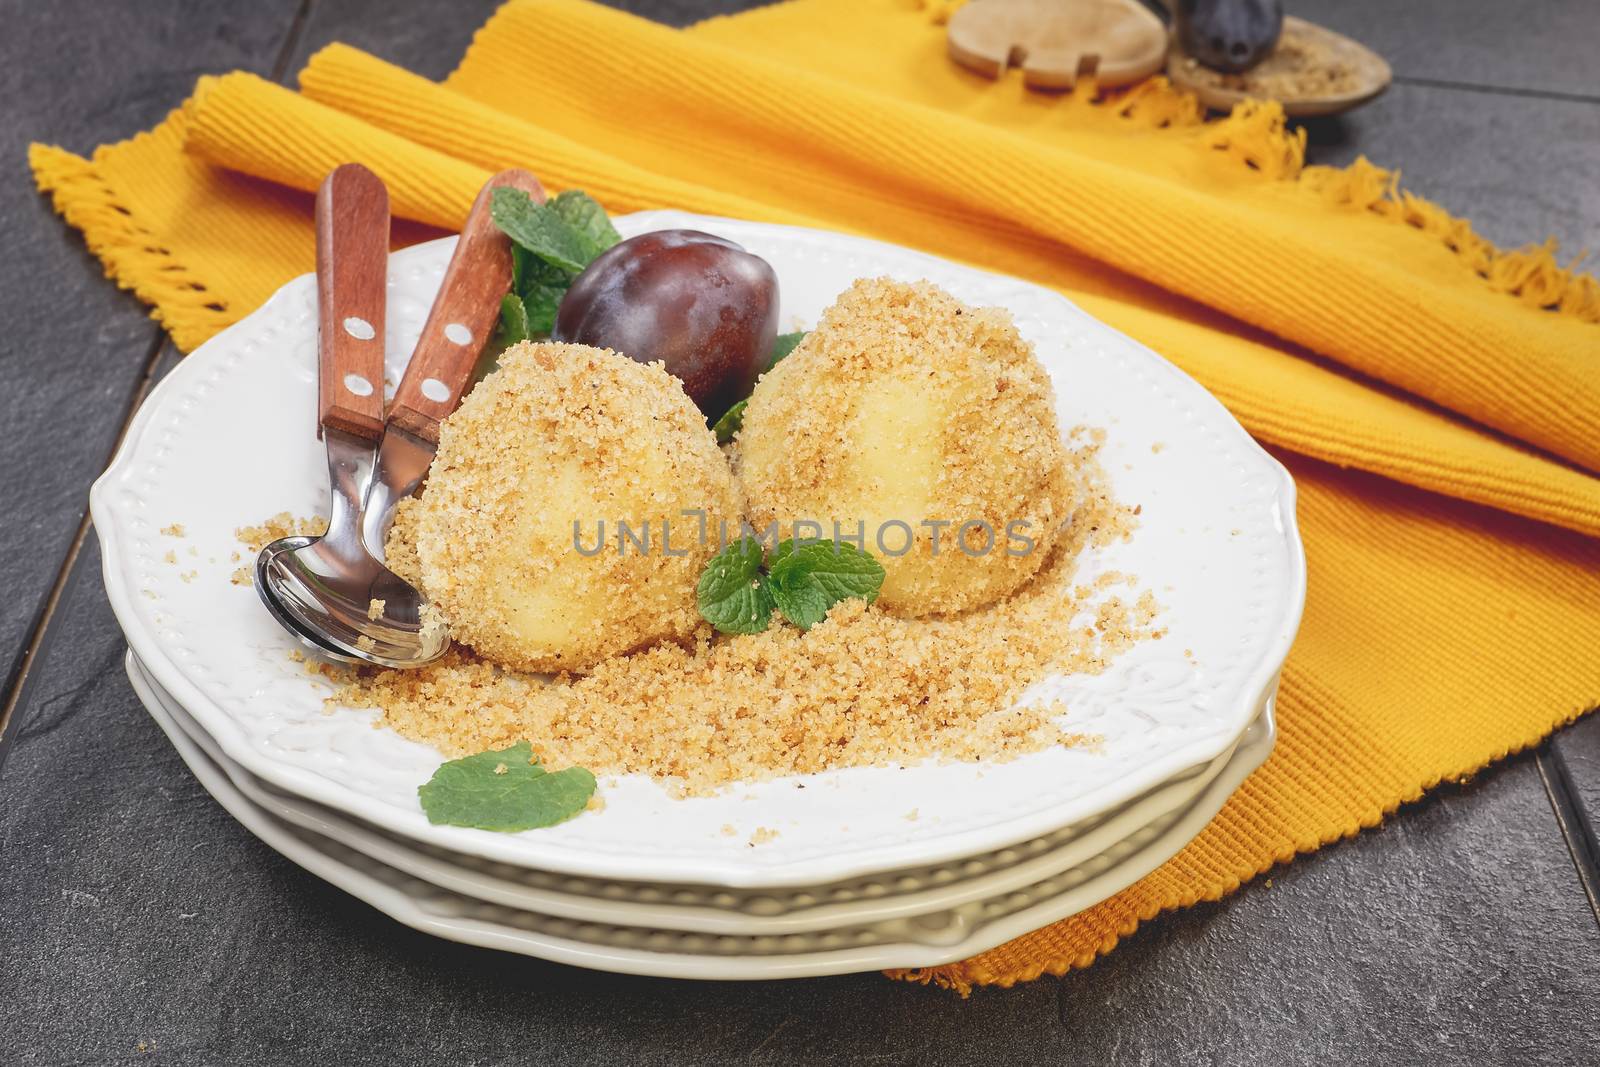 Potato Plum Dumplings on plate by Slast20